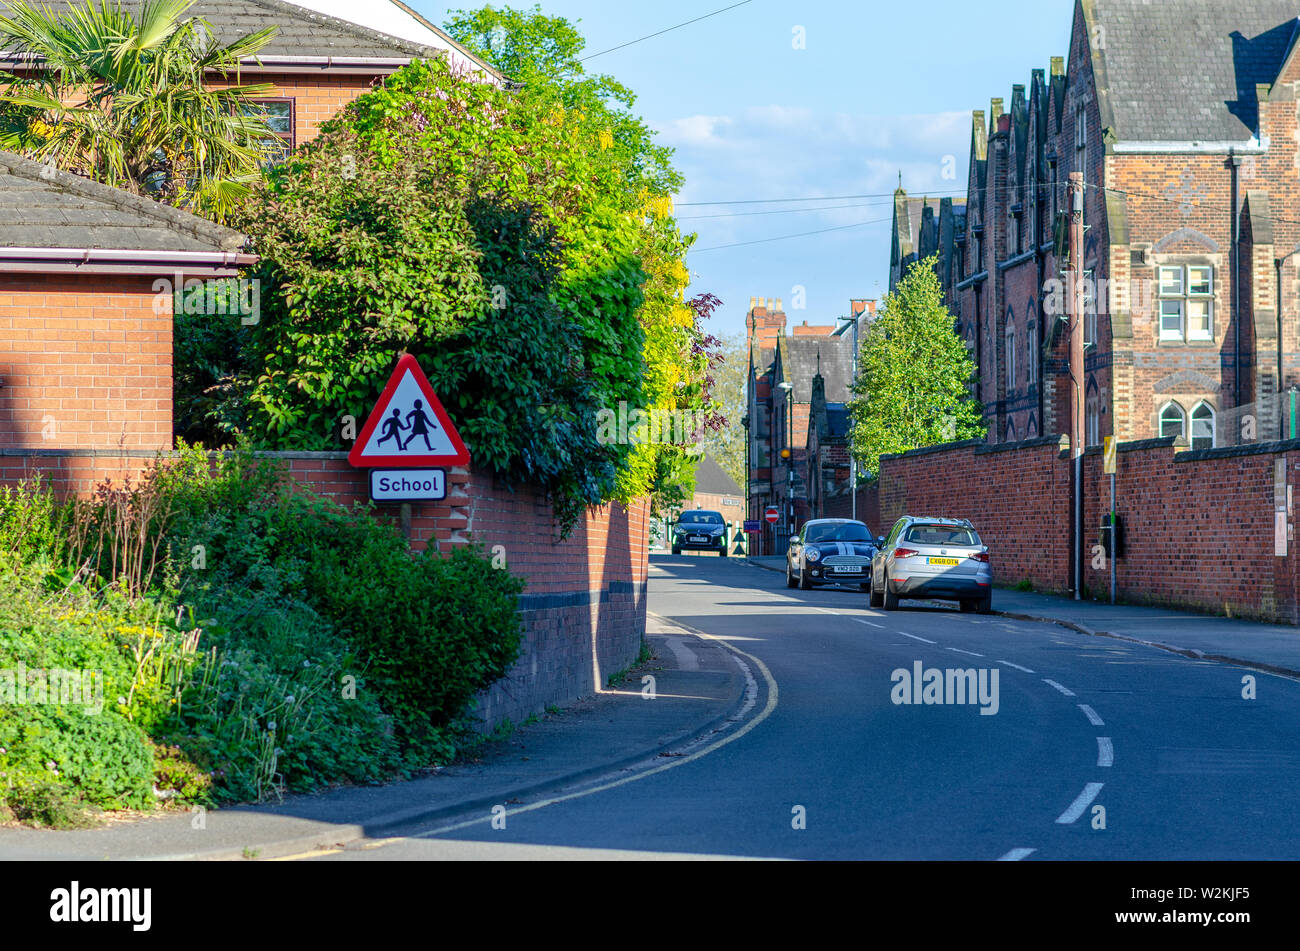 Das Bild einer Straße mit gemauerten Häuser in der kleinen englischen Stadt namens Stone, Staffordshire. Das Schild Architektur, wunderschönen, blau, Ziegel, buil Stockfoto